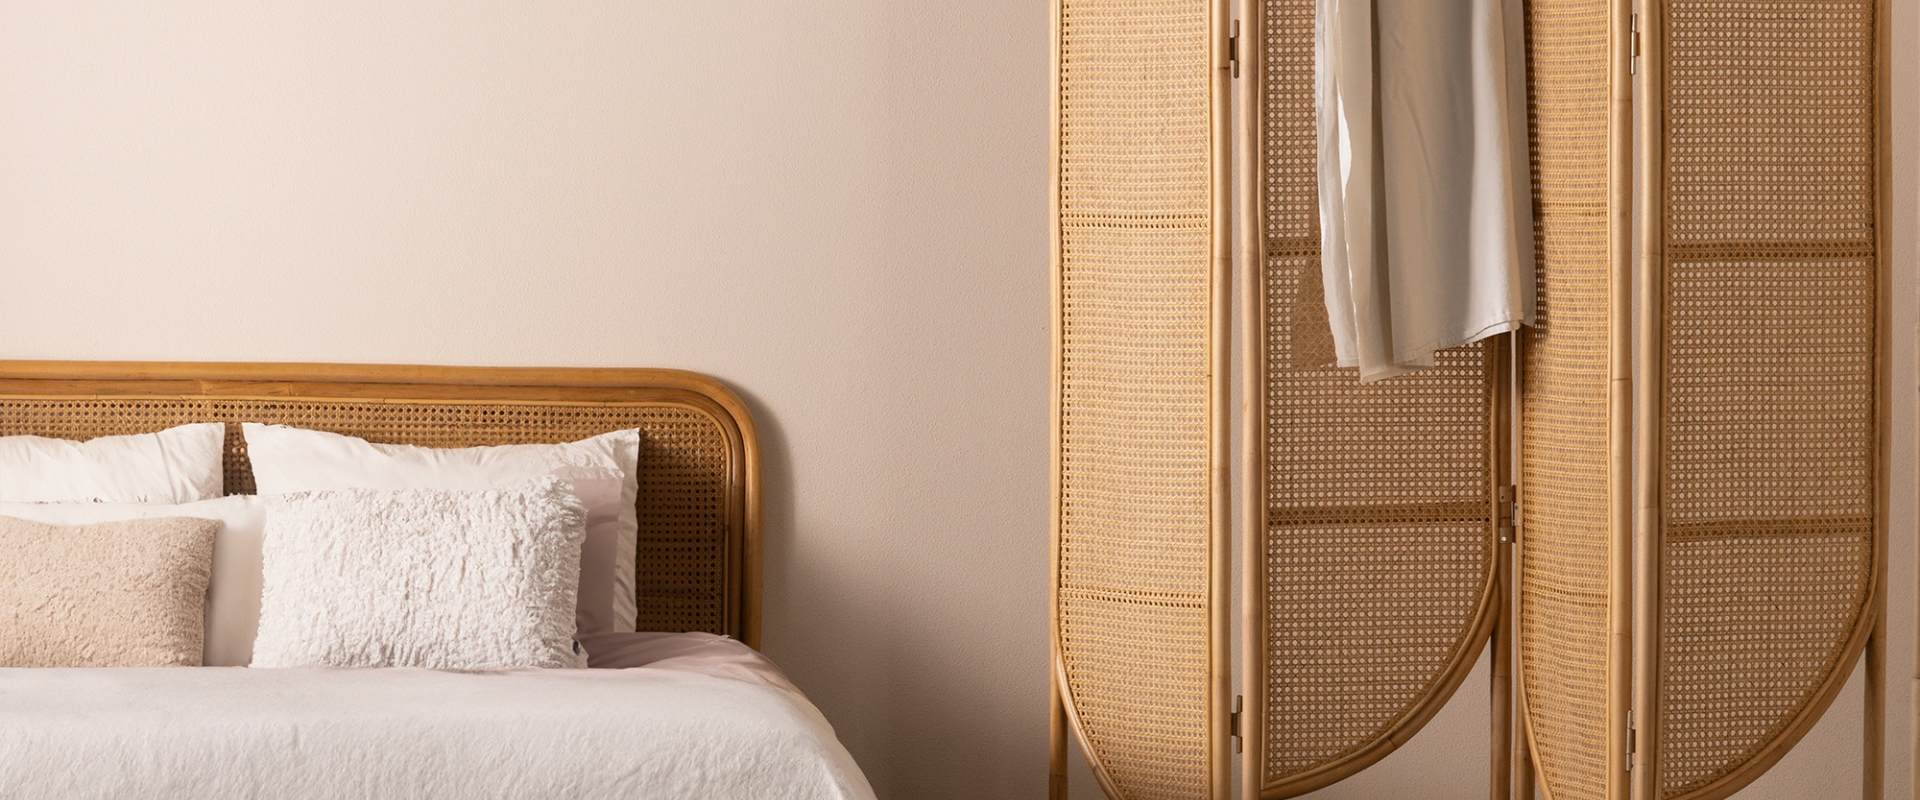 Z lewej strony łóżko z rattanowym zagłówkiem. Po prawej stronie rattanowy parawan ozdobiony plecionką wiedeńską. Na parawanie zawieszona narzuta, a na łóżku ułożone poduszki w miękkiej tkaninie boucele.